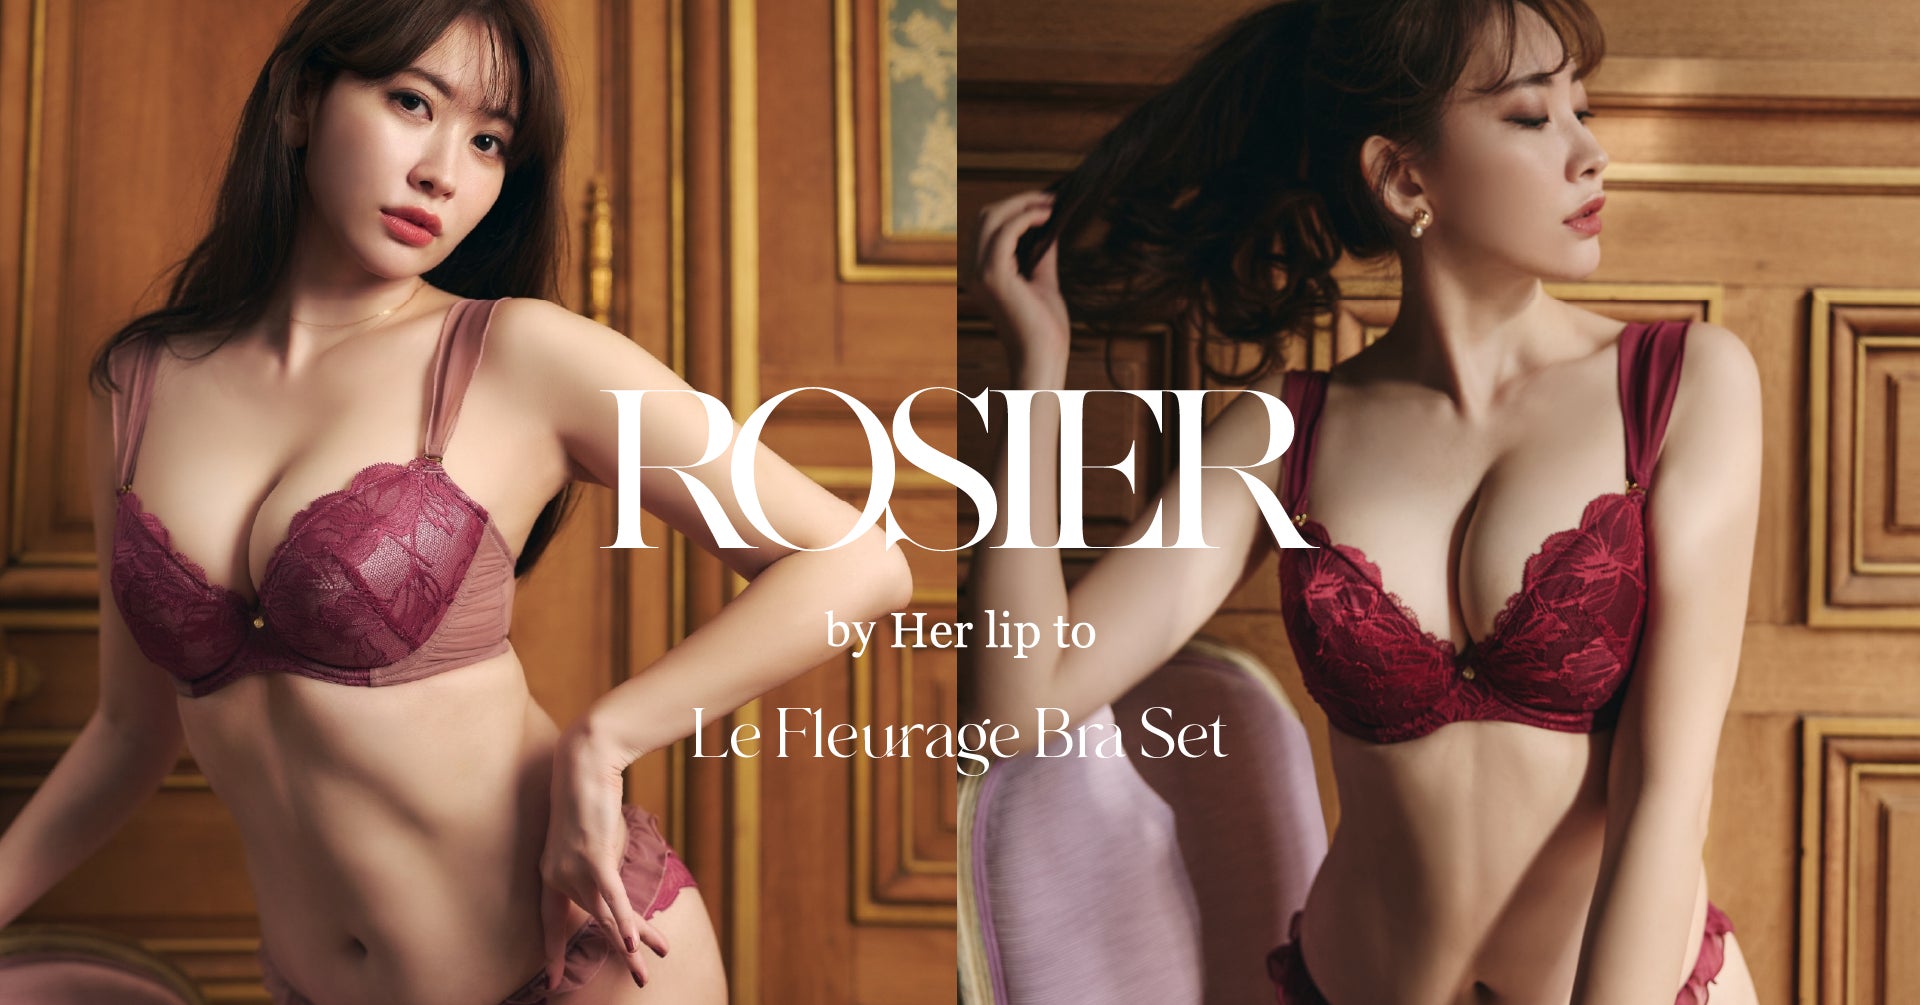 小嶋陽菜がプロデュースするランジェリーブランド「ROSIER by Her lip to」から＜Exclusive Collection＞の新アイテムが誕生。11月24日(金)より公式サイトにて発売。